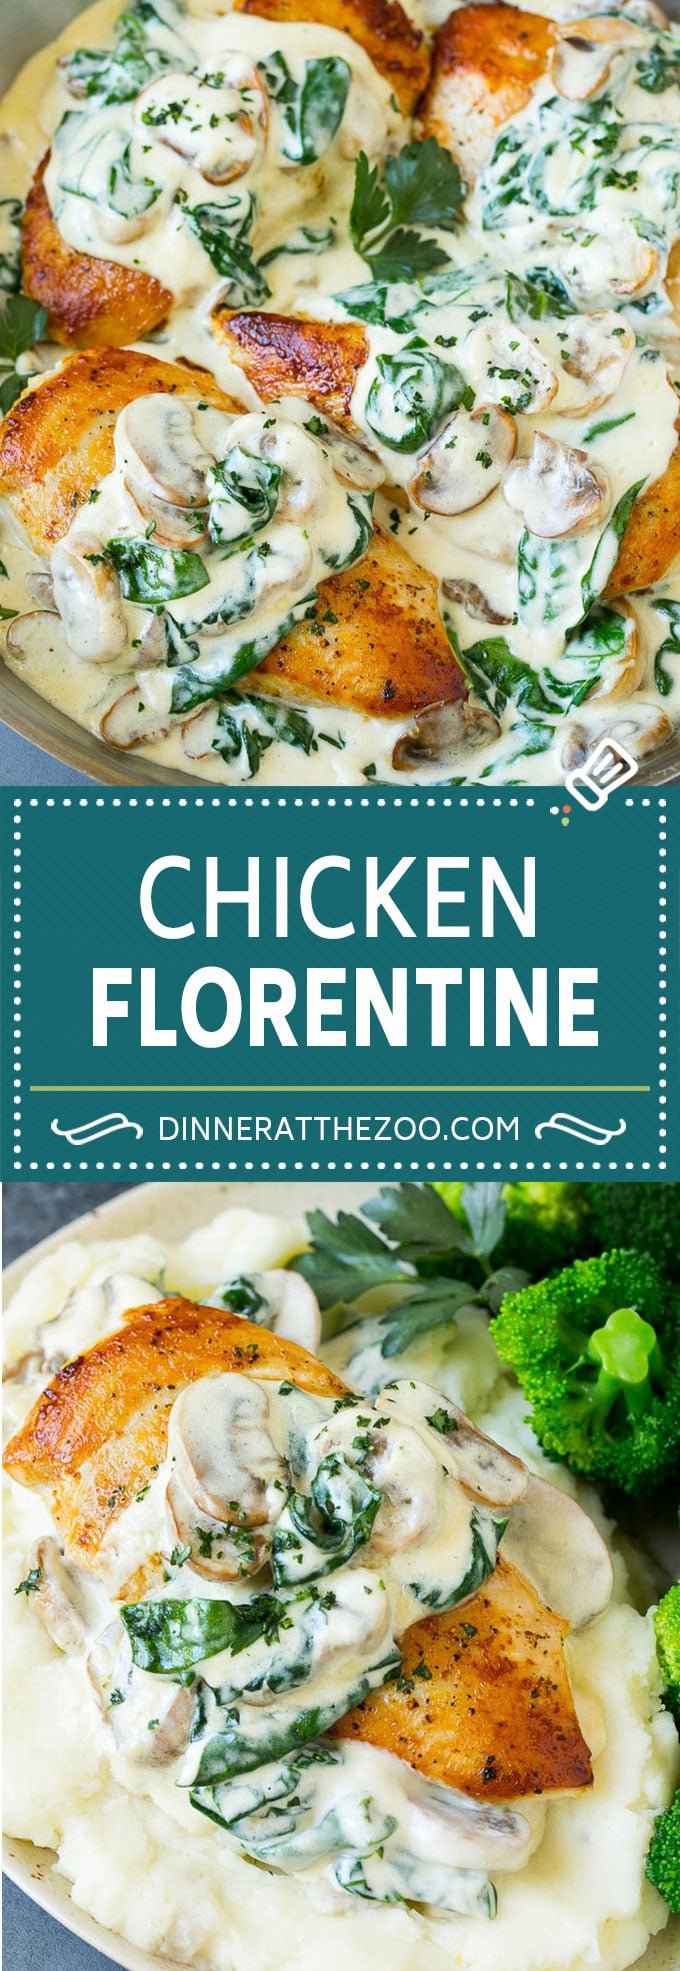 Chicken Florentine Recipe | Spinach Chicken | Mushroom Chicken #chicken #spinach #mushrooms #lowcarb #keto #dinner #dinneratthezoo